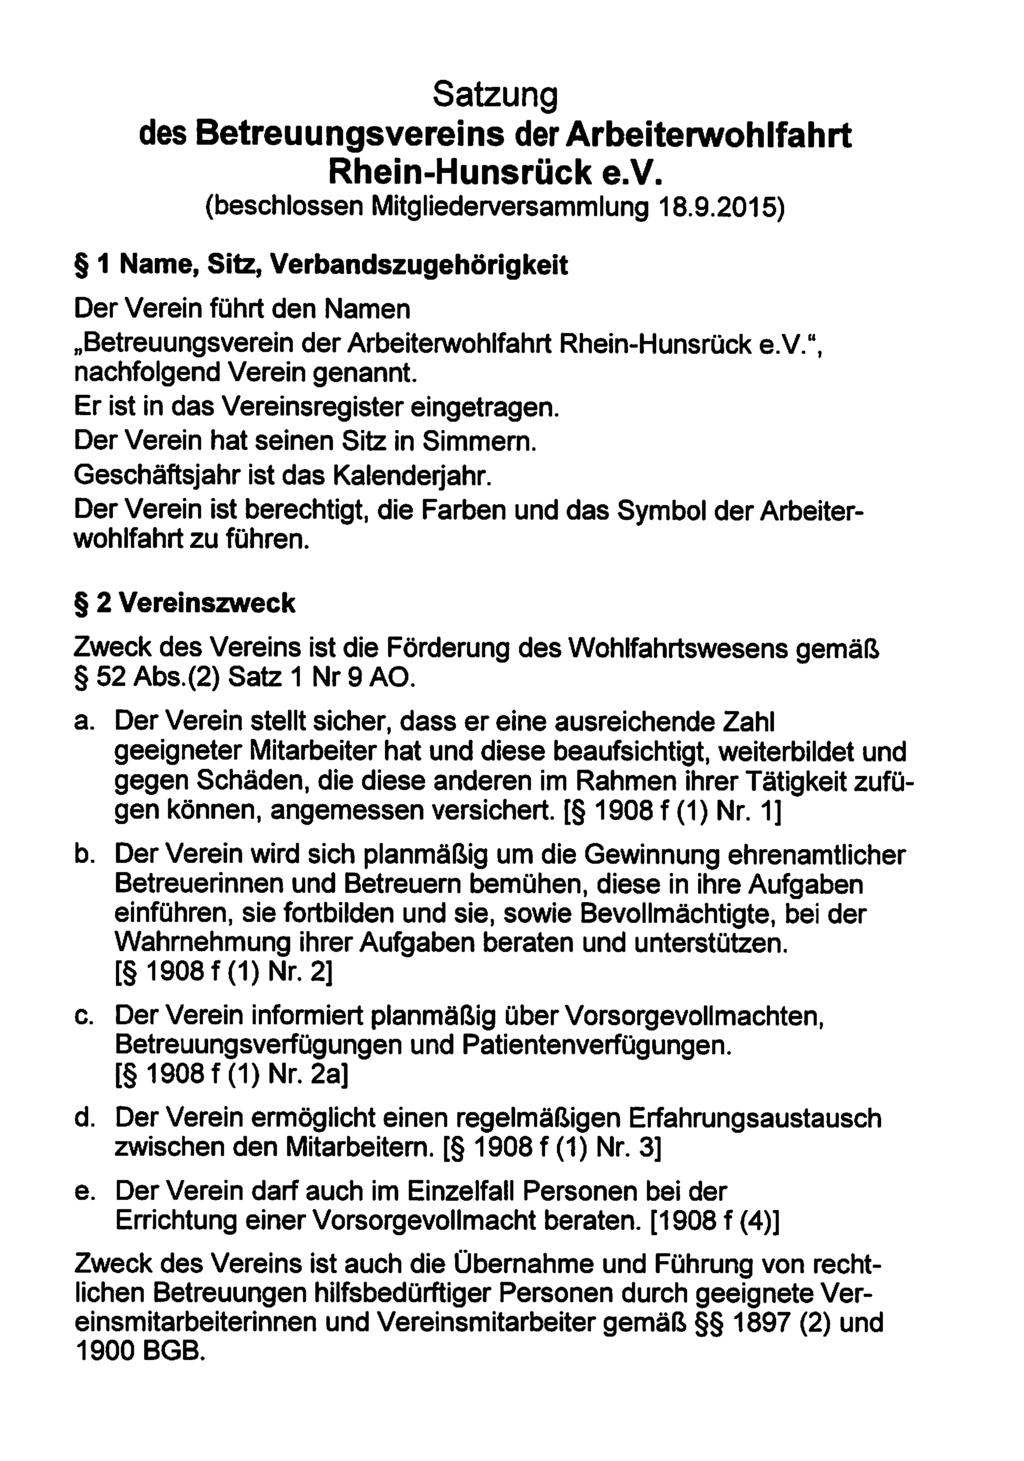 Satzung des Betreuungsvereins der Arbeiterwohlfahrt Rhein-Hunsrück e.v. (beschlossen Mitgliederversammlung 18.9.